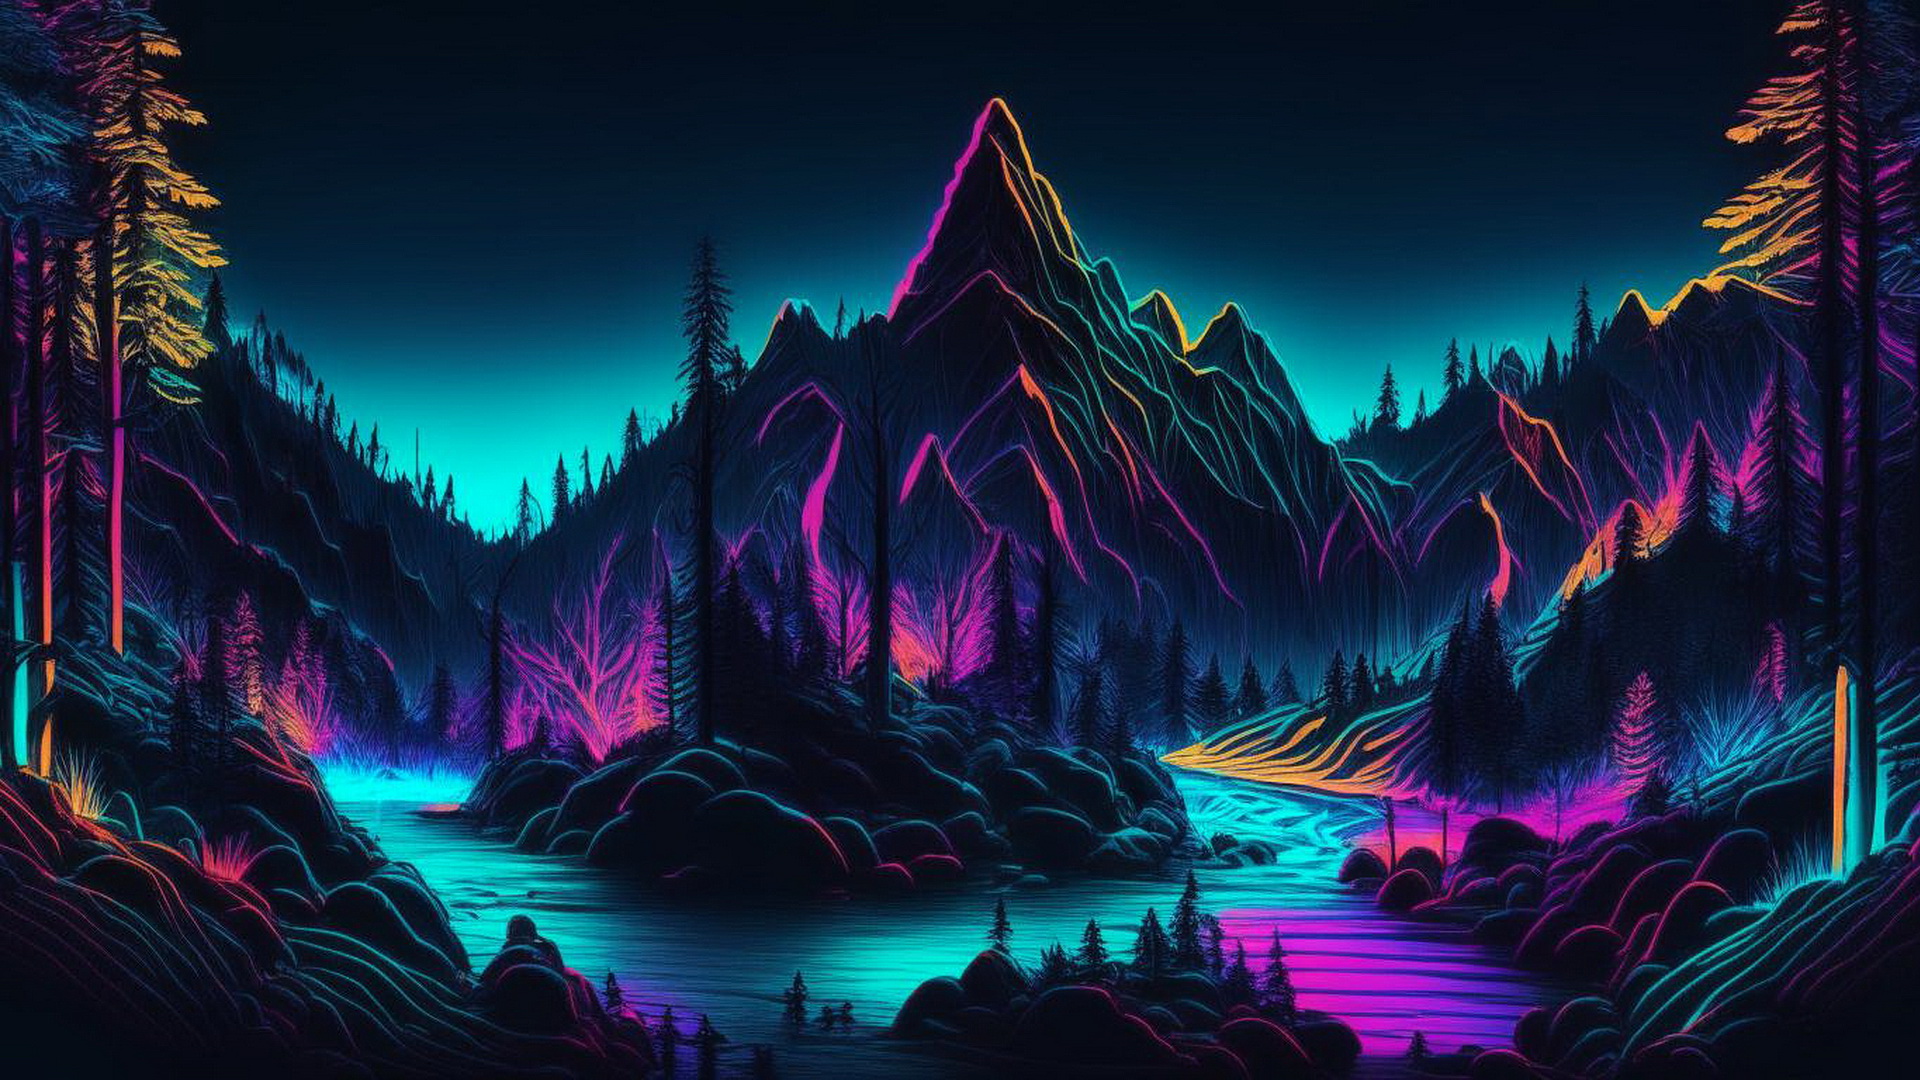 Бесплатное фото Река на фоне  ночного горного пейзажа